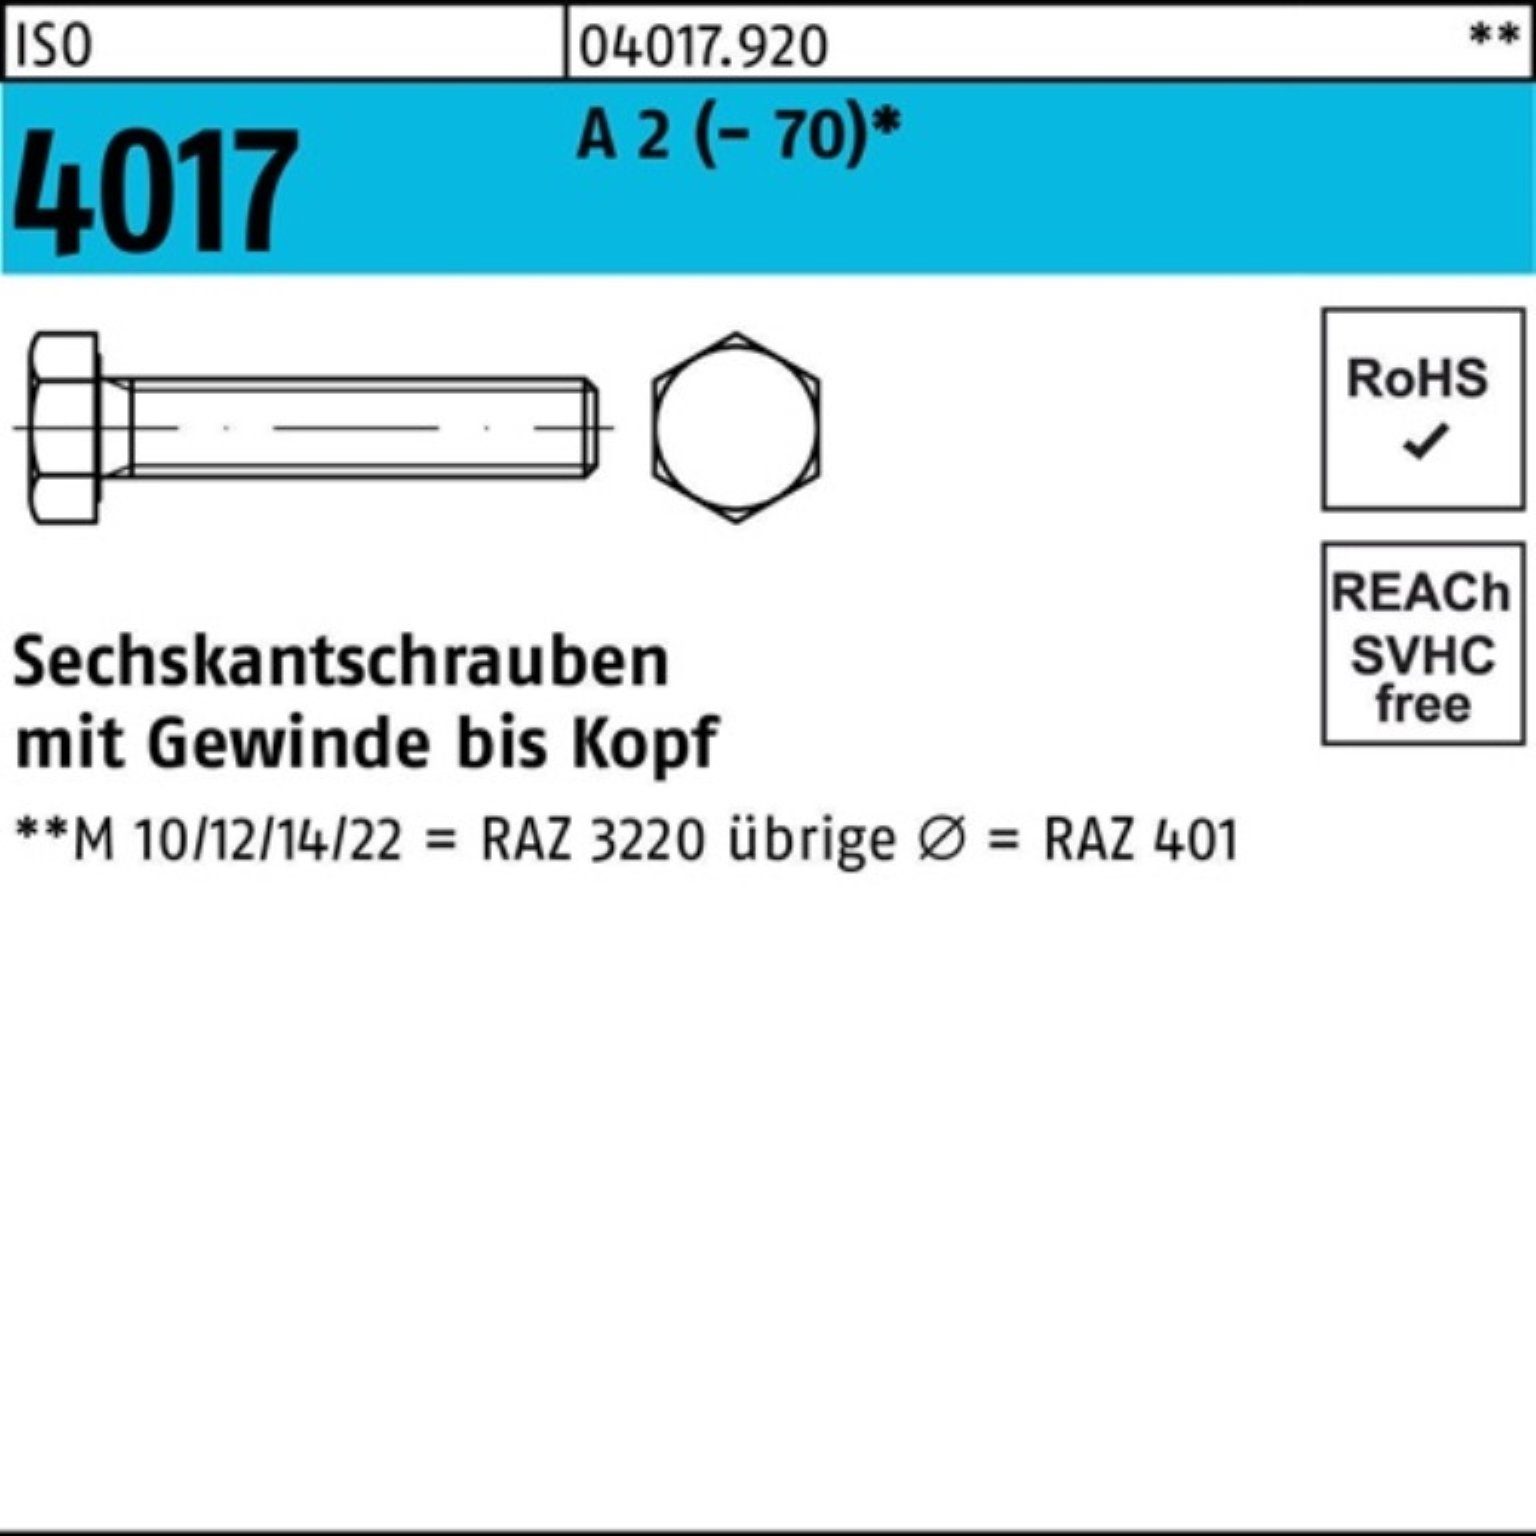 Bufab Sechskantschraube 100er Pack Sechskantschraube ISO 4017 VG M10x 50 A 2 (70) 100 Stück | Schrauben